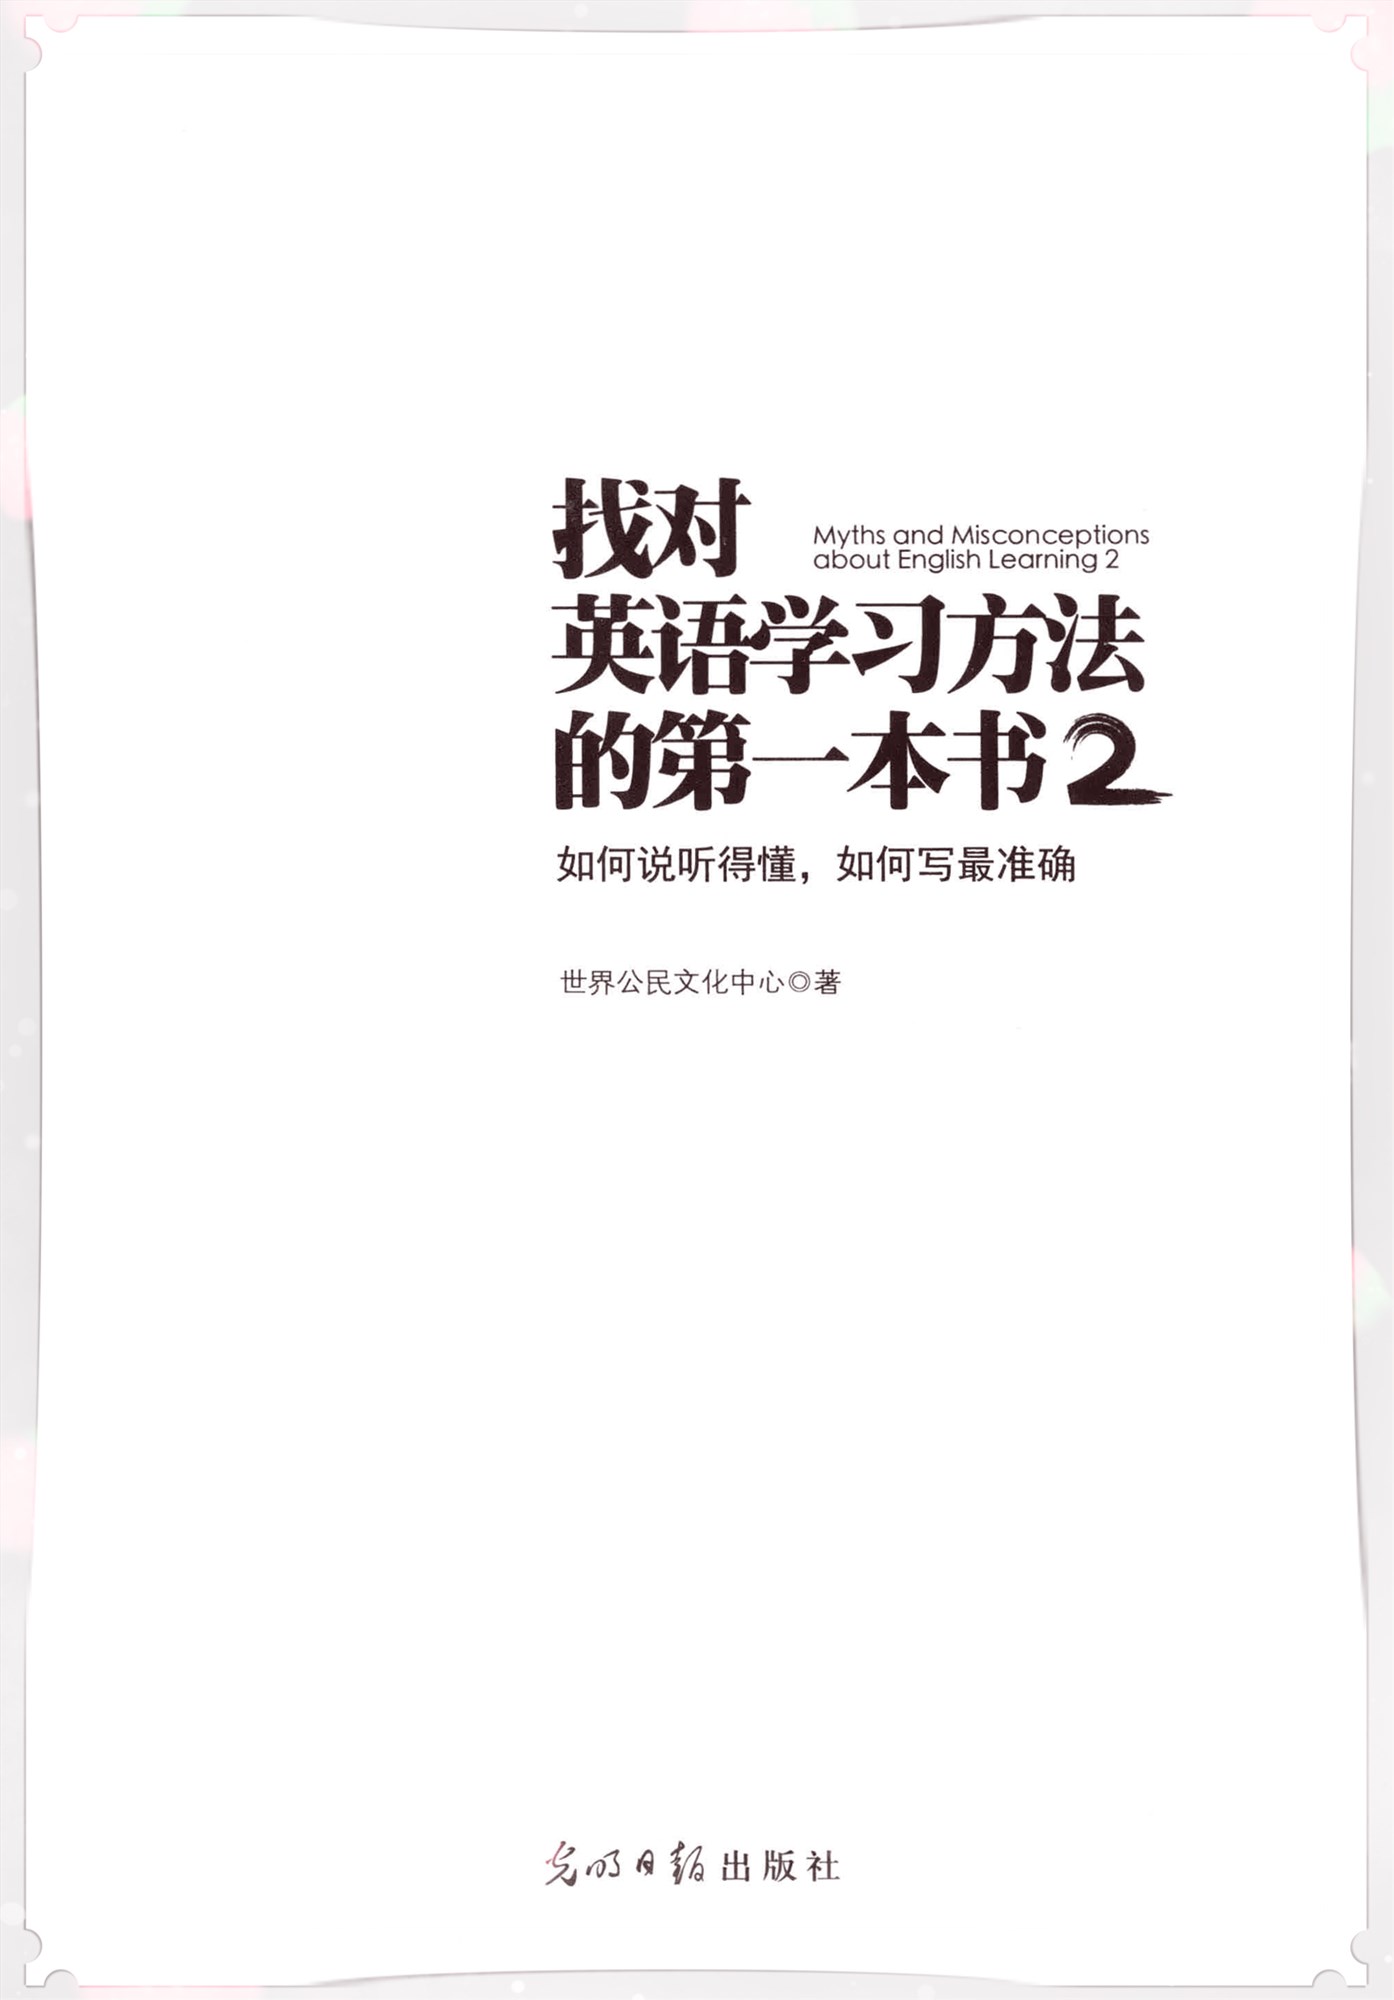 《找对英语学习方法的第一本书2》世界公民文化中心 扫描版 PDF电子书 下载